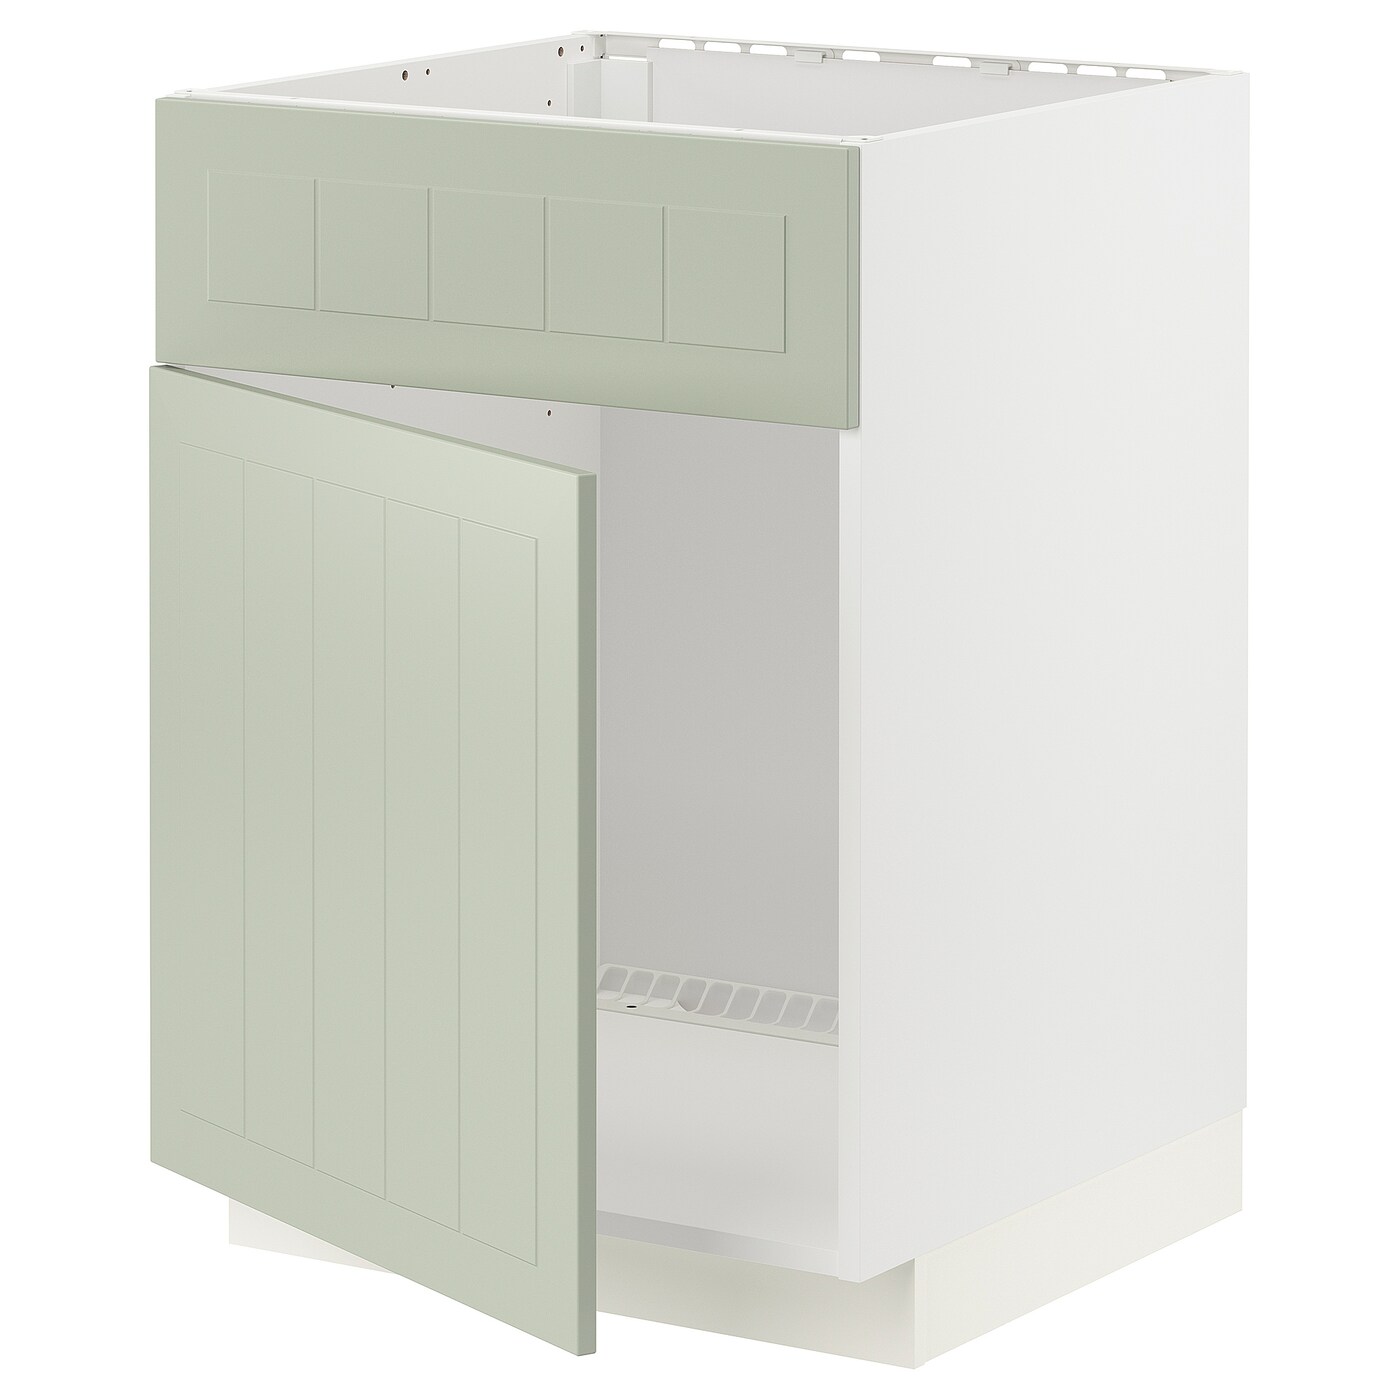 Напольный шкаф - METOD IKEA/ МЕТОД ИКЕА,  88х60 см, белый/светло-зеленый